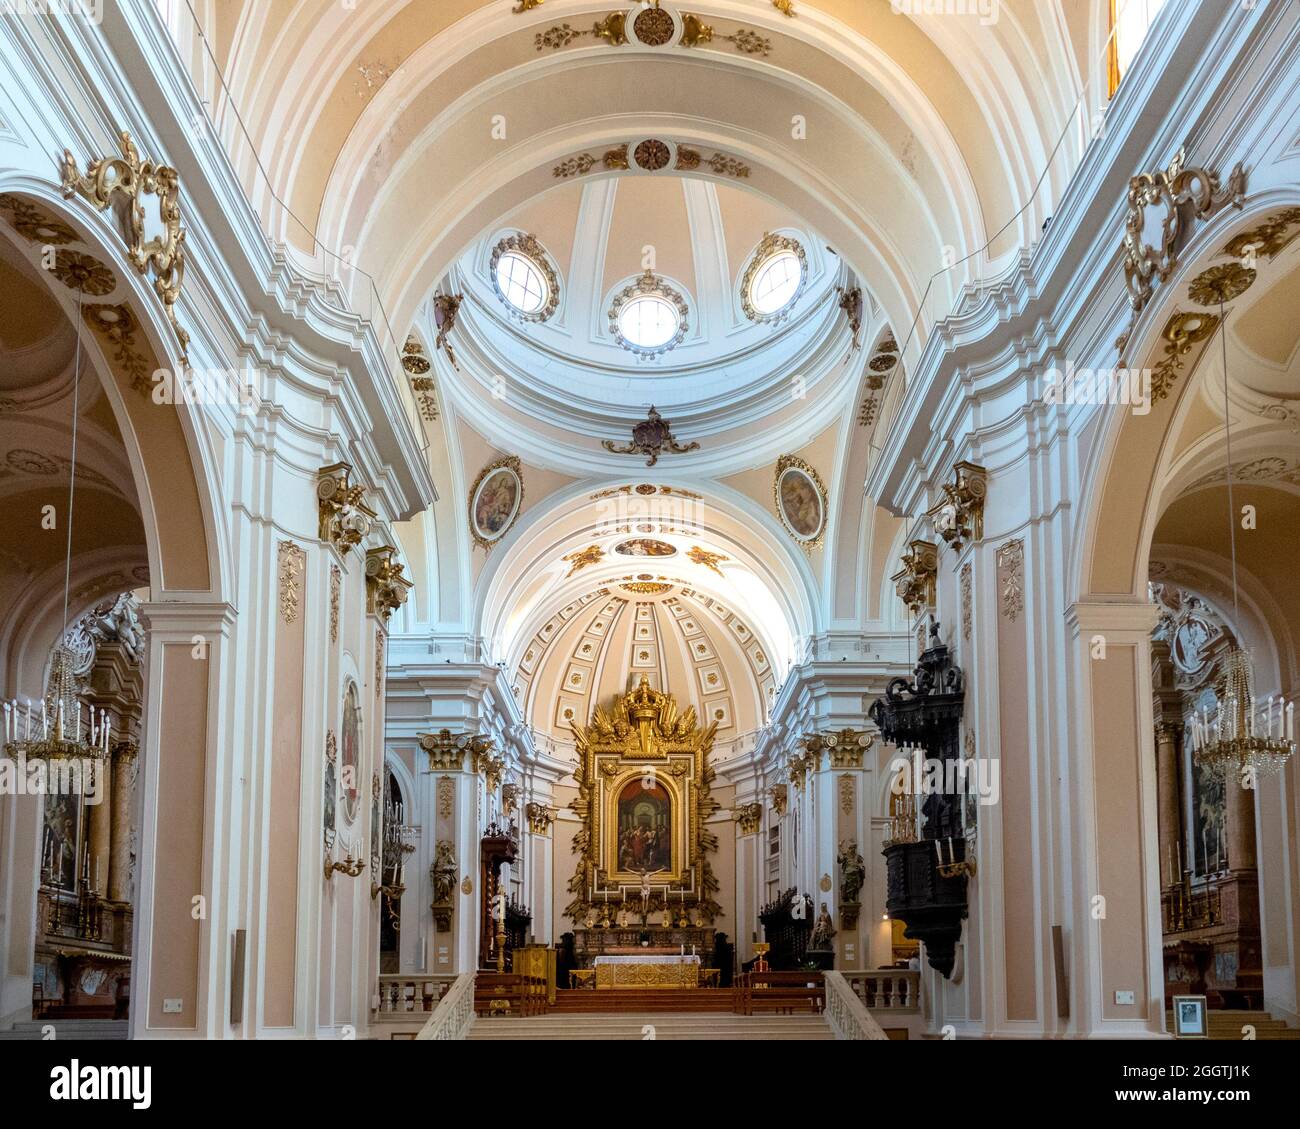 Intérieur de la cathédrale de San Giustino, Chieti, Italie Banque D'Images